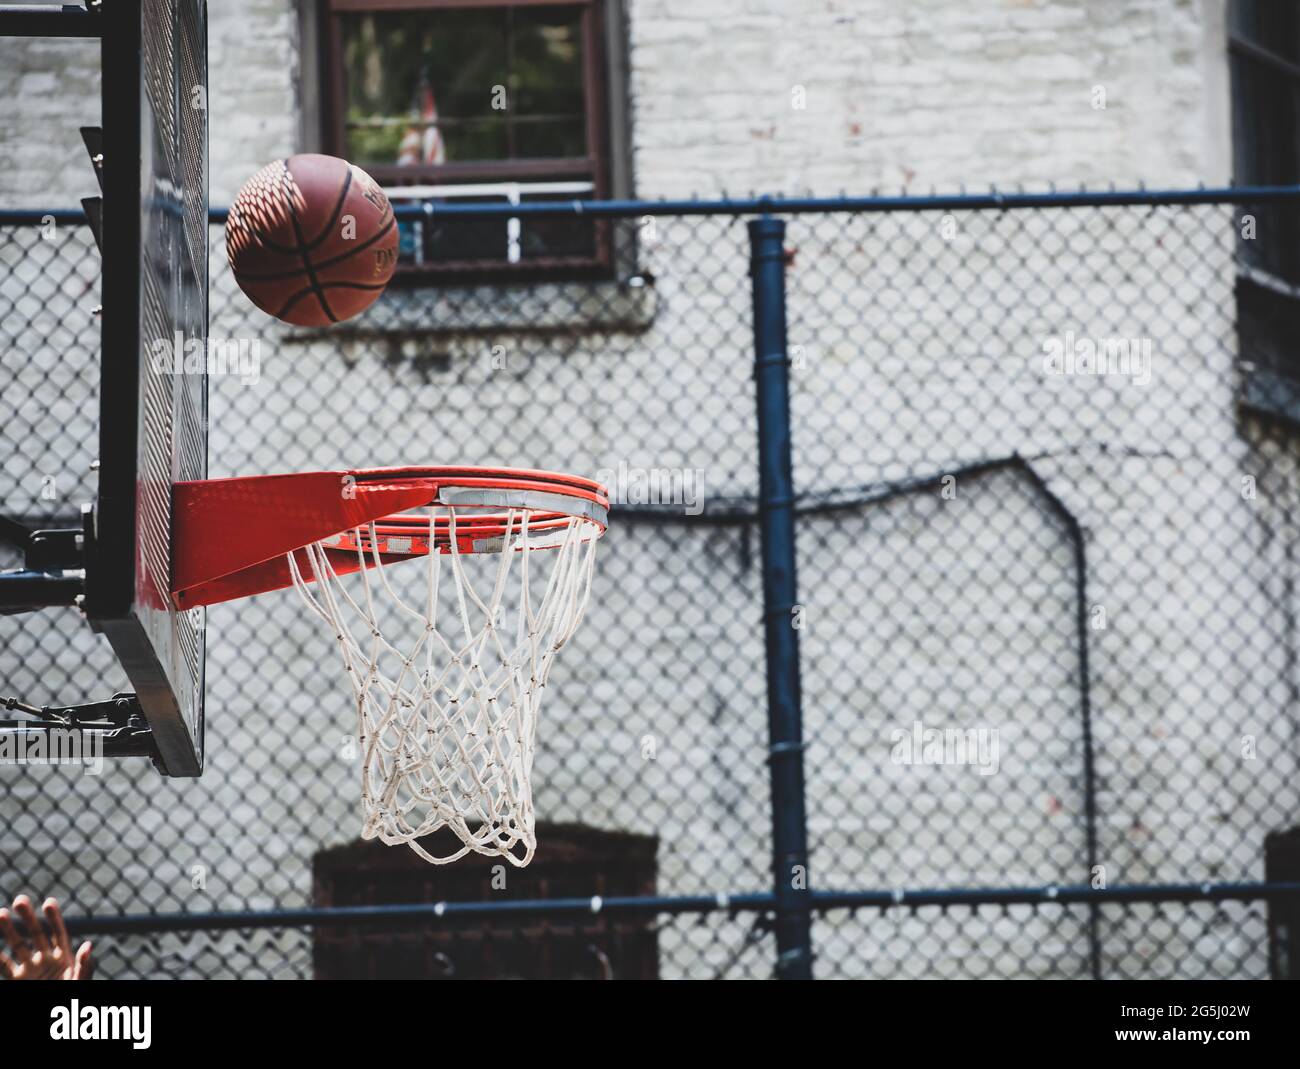 Panier de basket-ball dans un terrain de jeu de quartier à New Yor. La balle rebondit sur le bord prêts à entrer. Banque D'Images